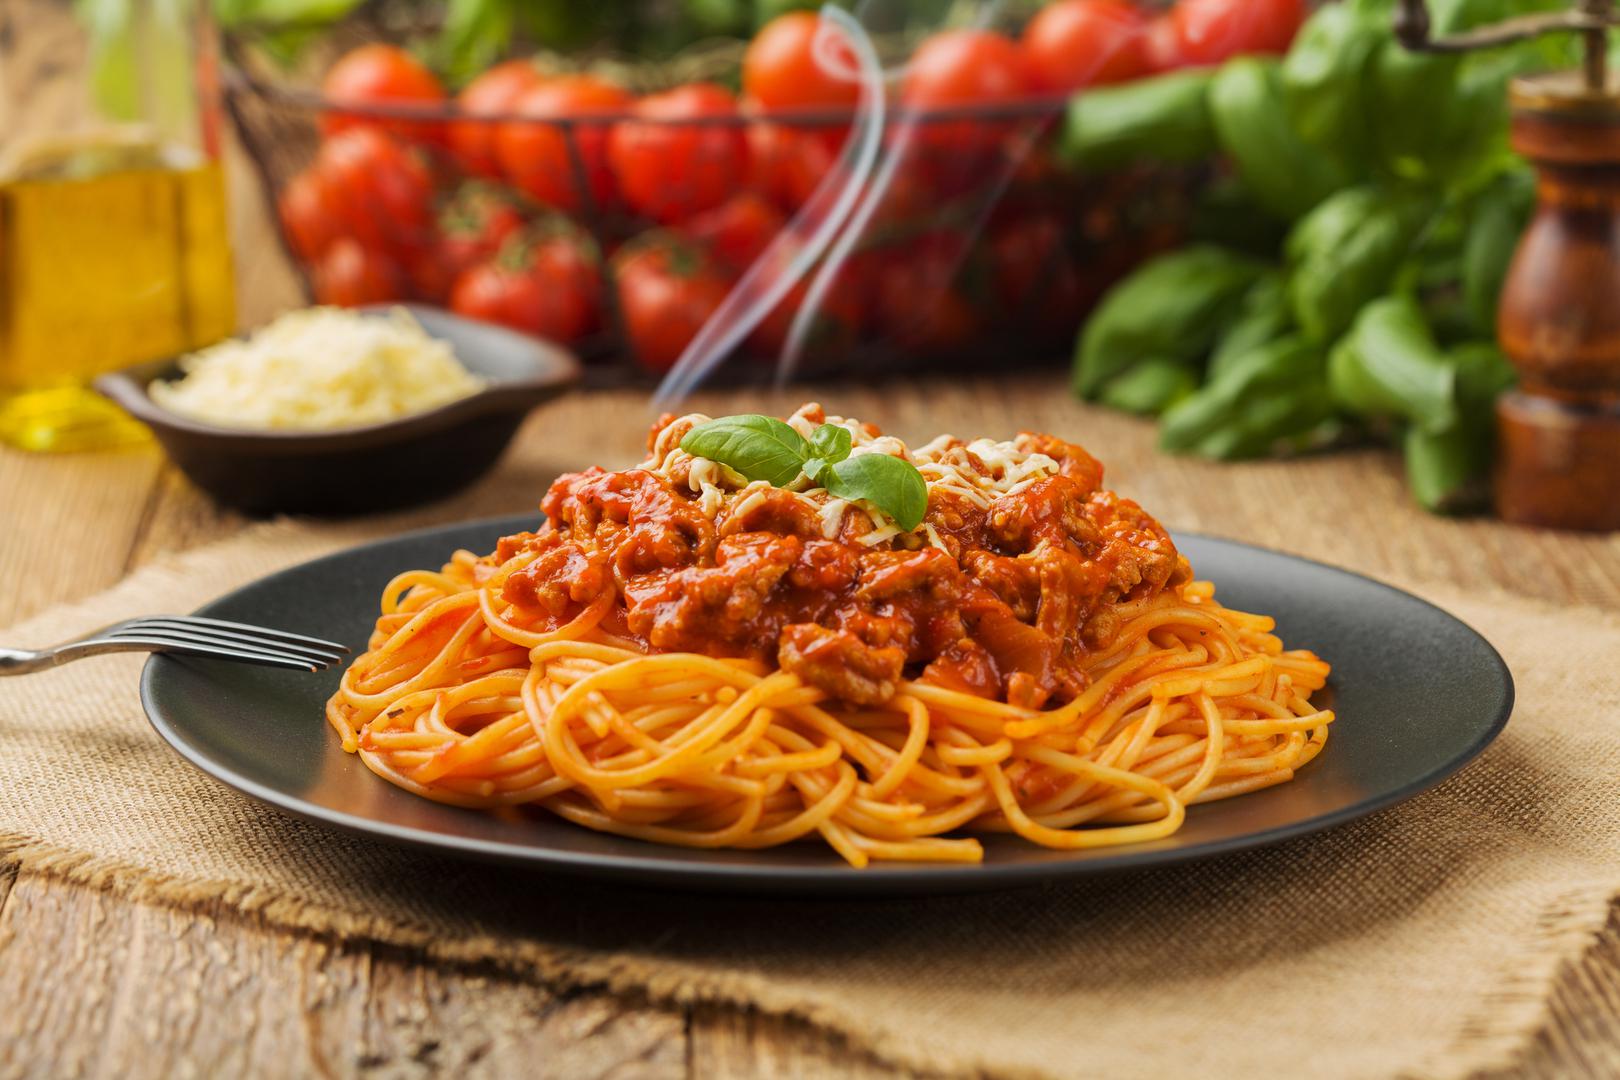 6. TJESTENINA - Ako ne možete izbaciti tjesteninu iz prehrane, pokušajte je zamijeniti špagetima od tikvica. Ako vam se ne sviđa tekstura tikvica, pokušajte napraviti vlastitu tjesteninu s pomoću spiralizatora. 